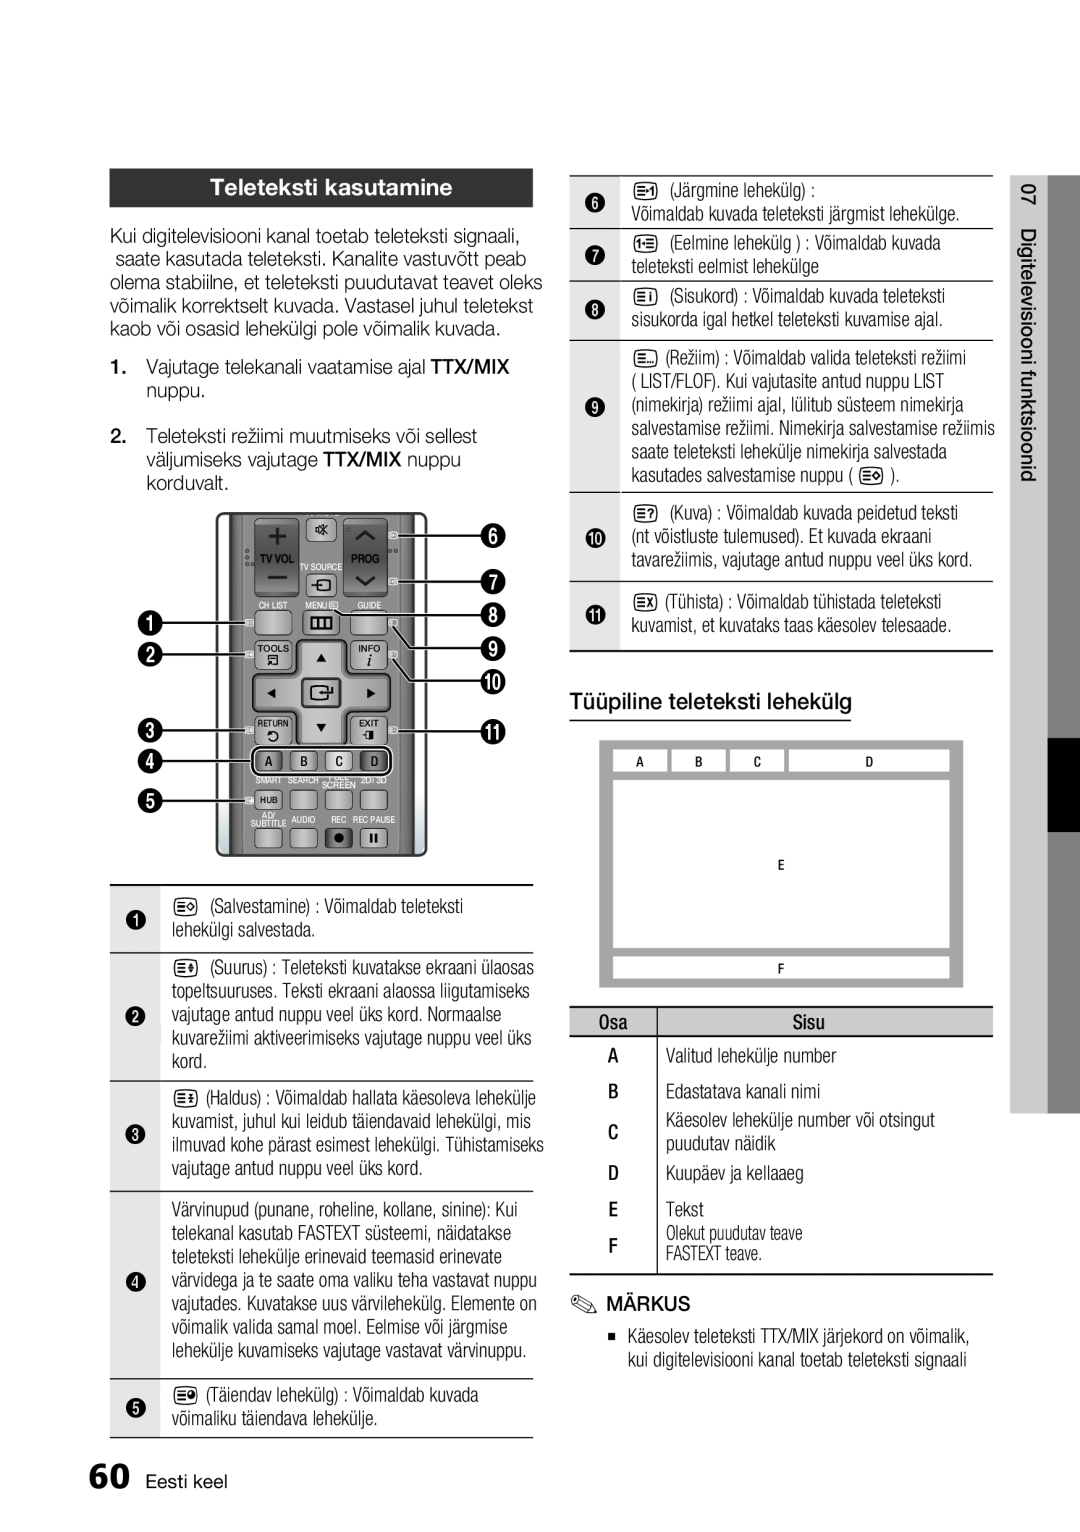 Samsung BD-E6300/EN manual Teleteksti kasutamine, Tüüpiline teleteksti lehekülg, võimaliku täiendava lehekülje 